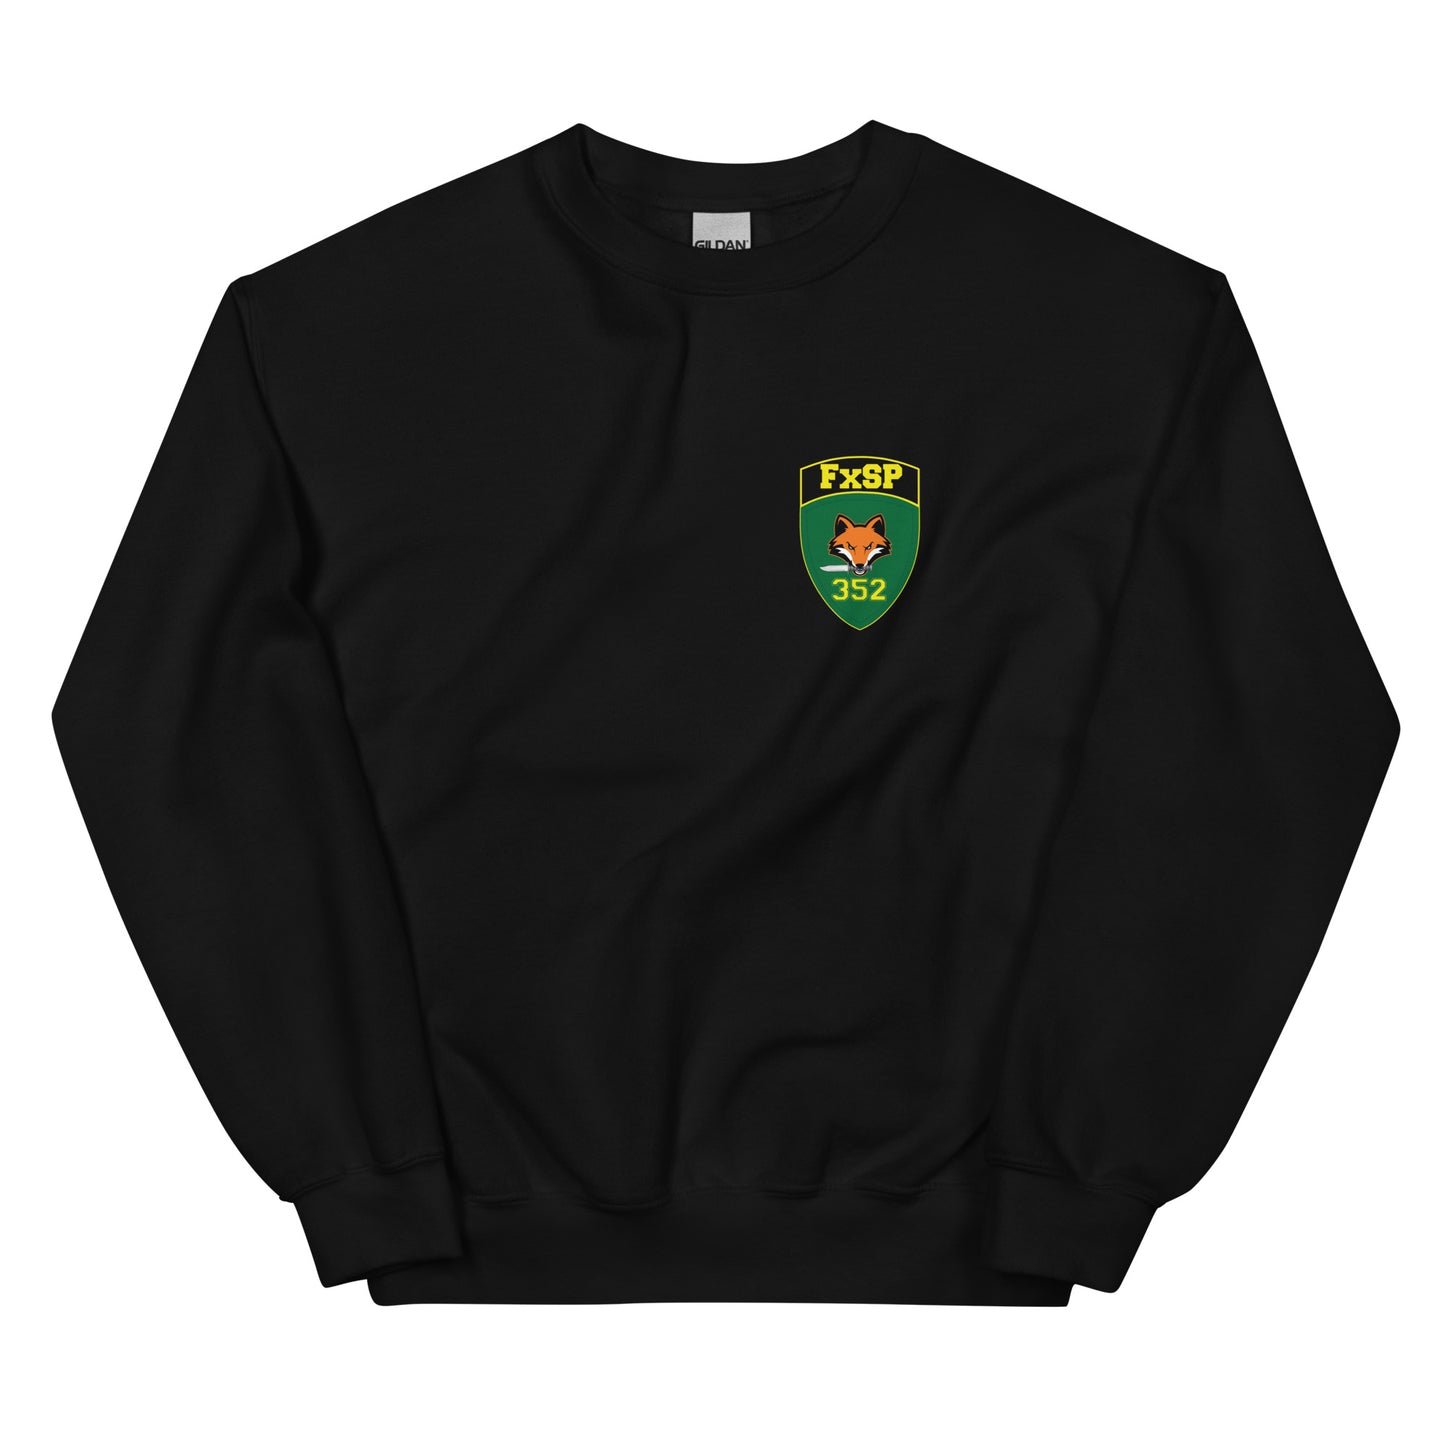 352 CACOM FXSP sweatshirt